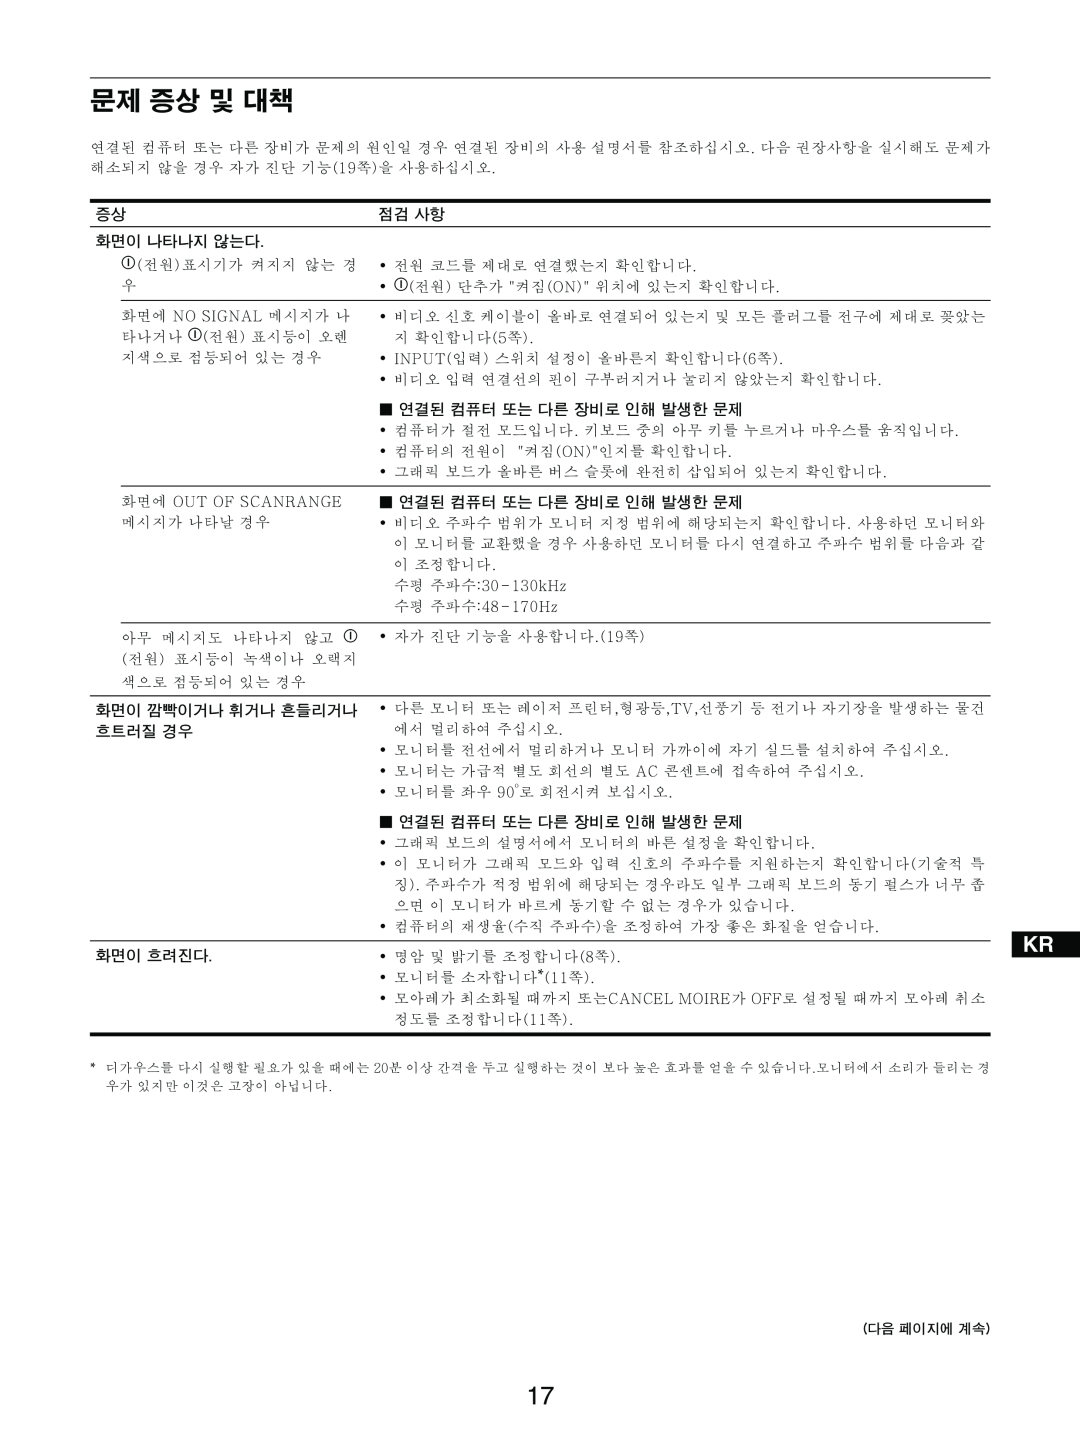 Sony GDM-5510 operating instructions Enn Fk 